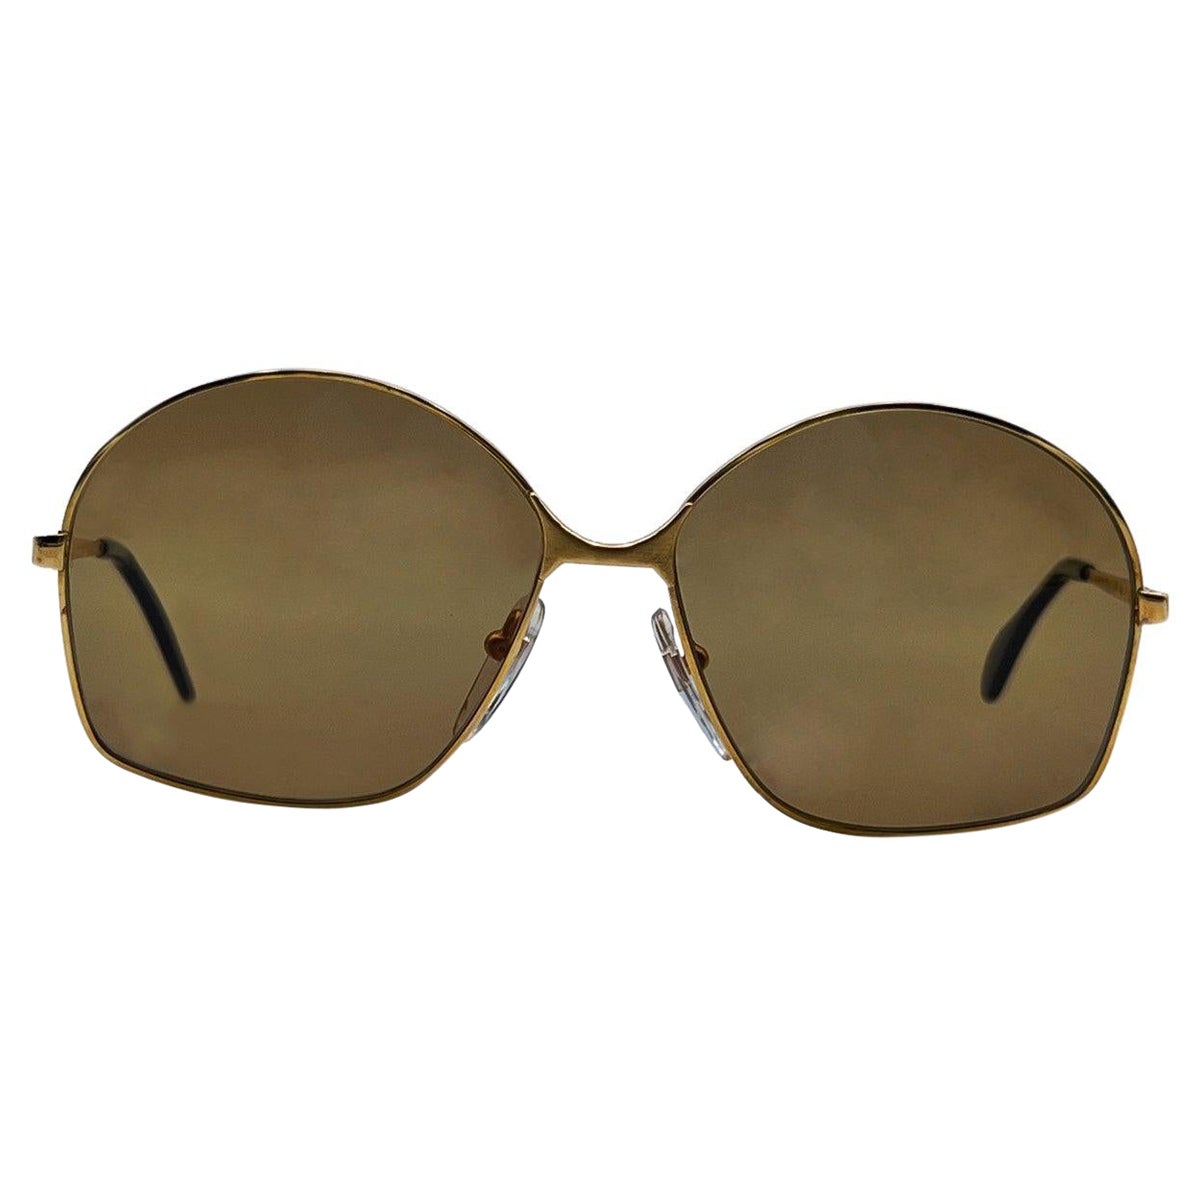 Bausch & Lomb Vintage 70s Mint Unisex Gold Sunglasses Mod. 516 For Sale